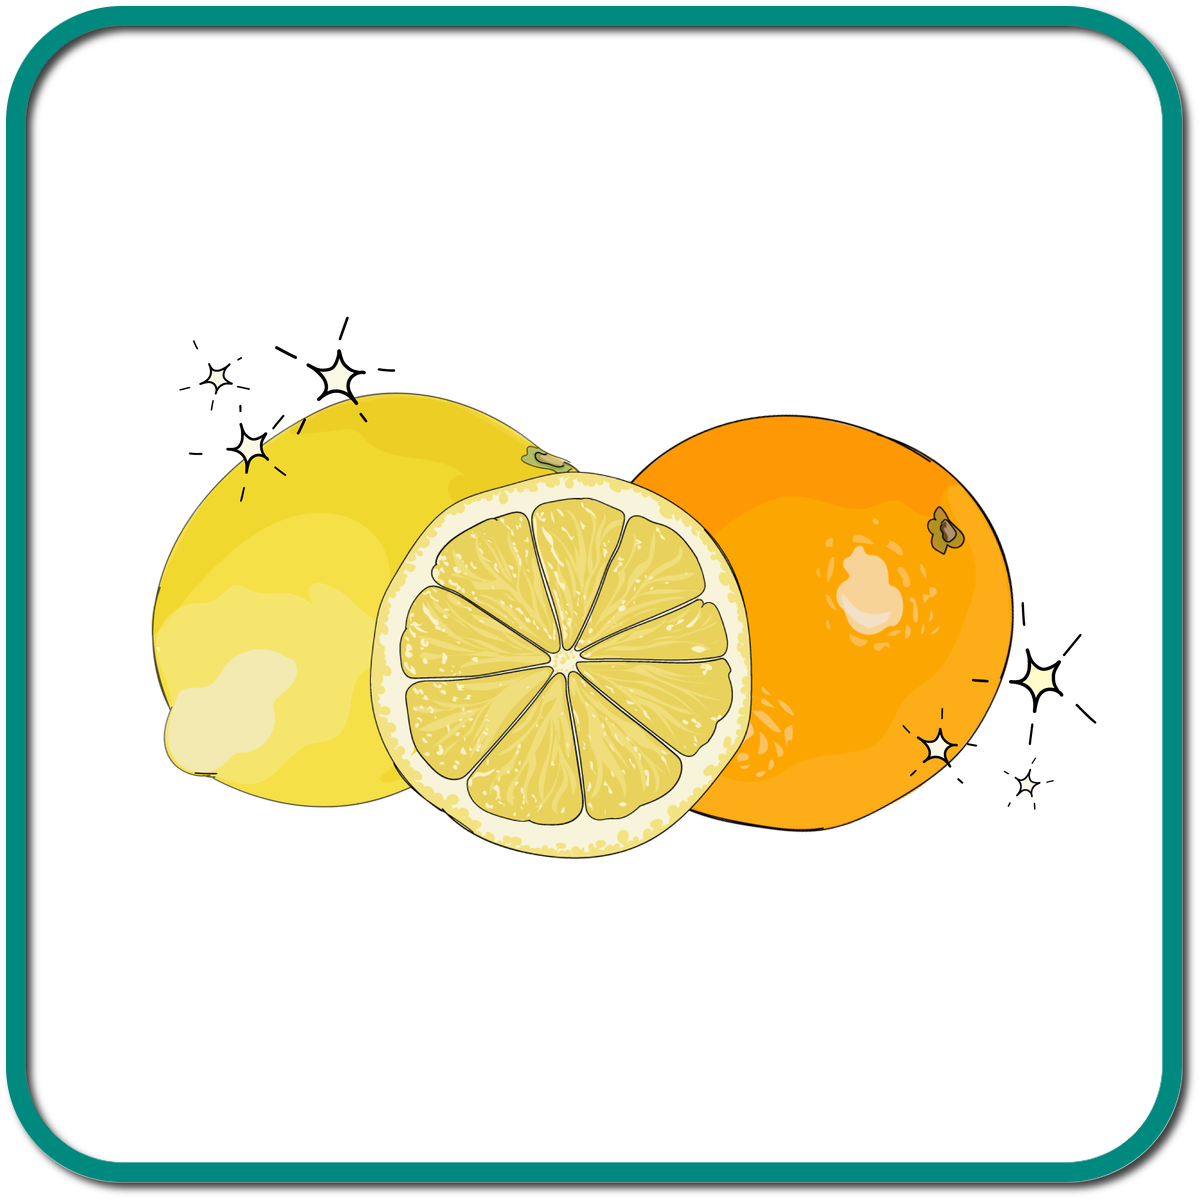 Citrus fruit coatings